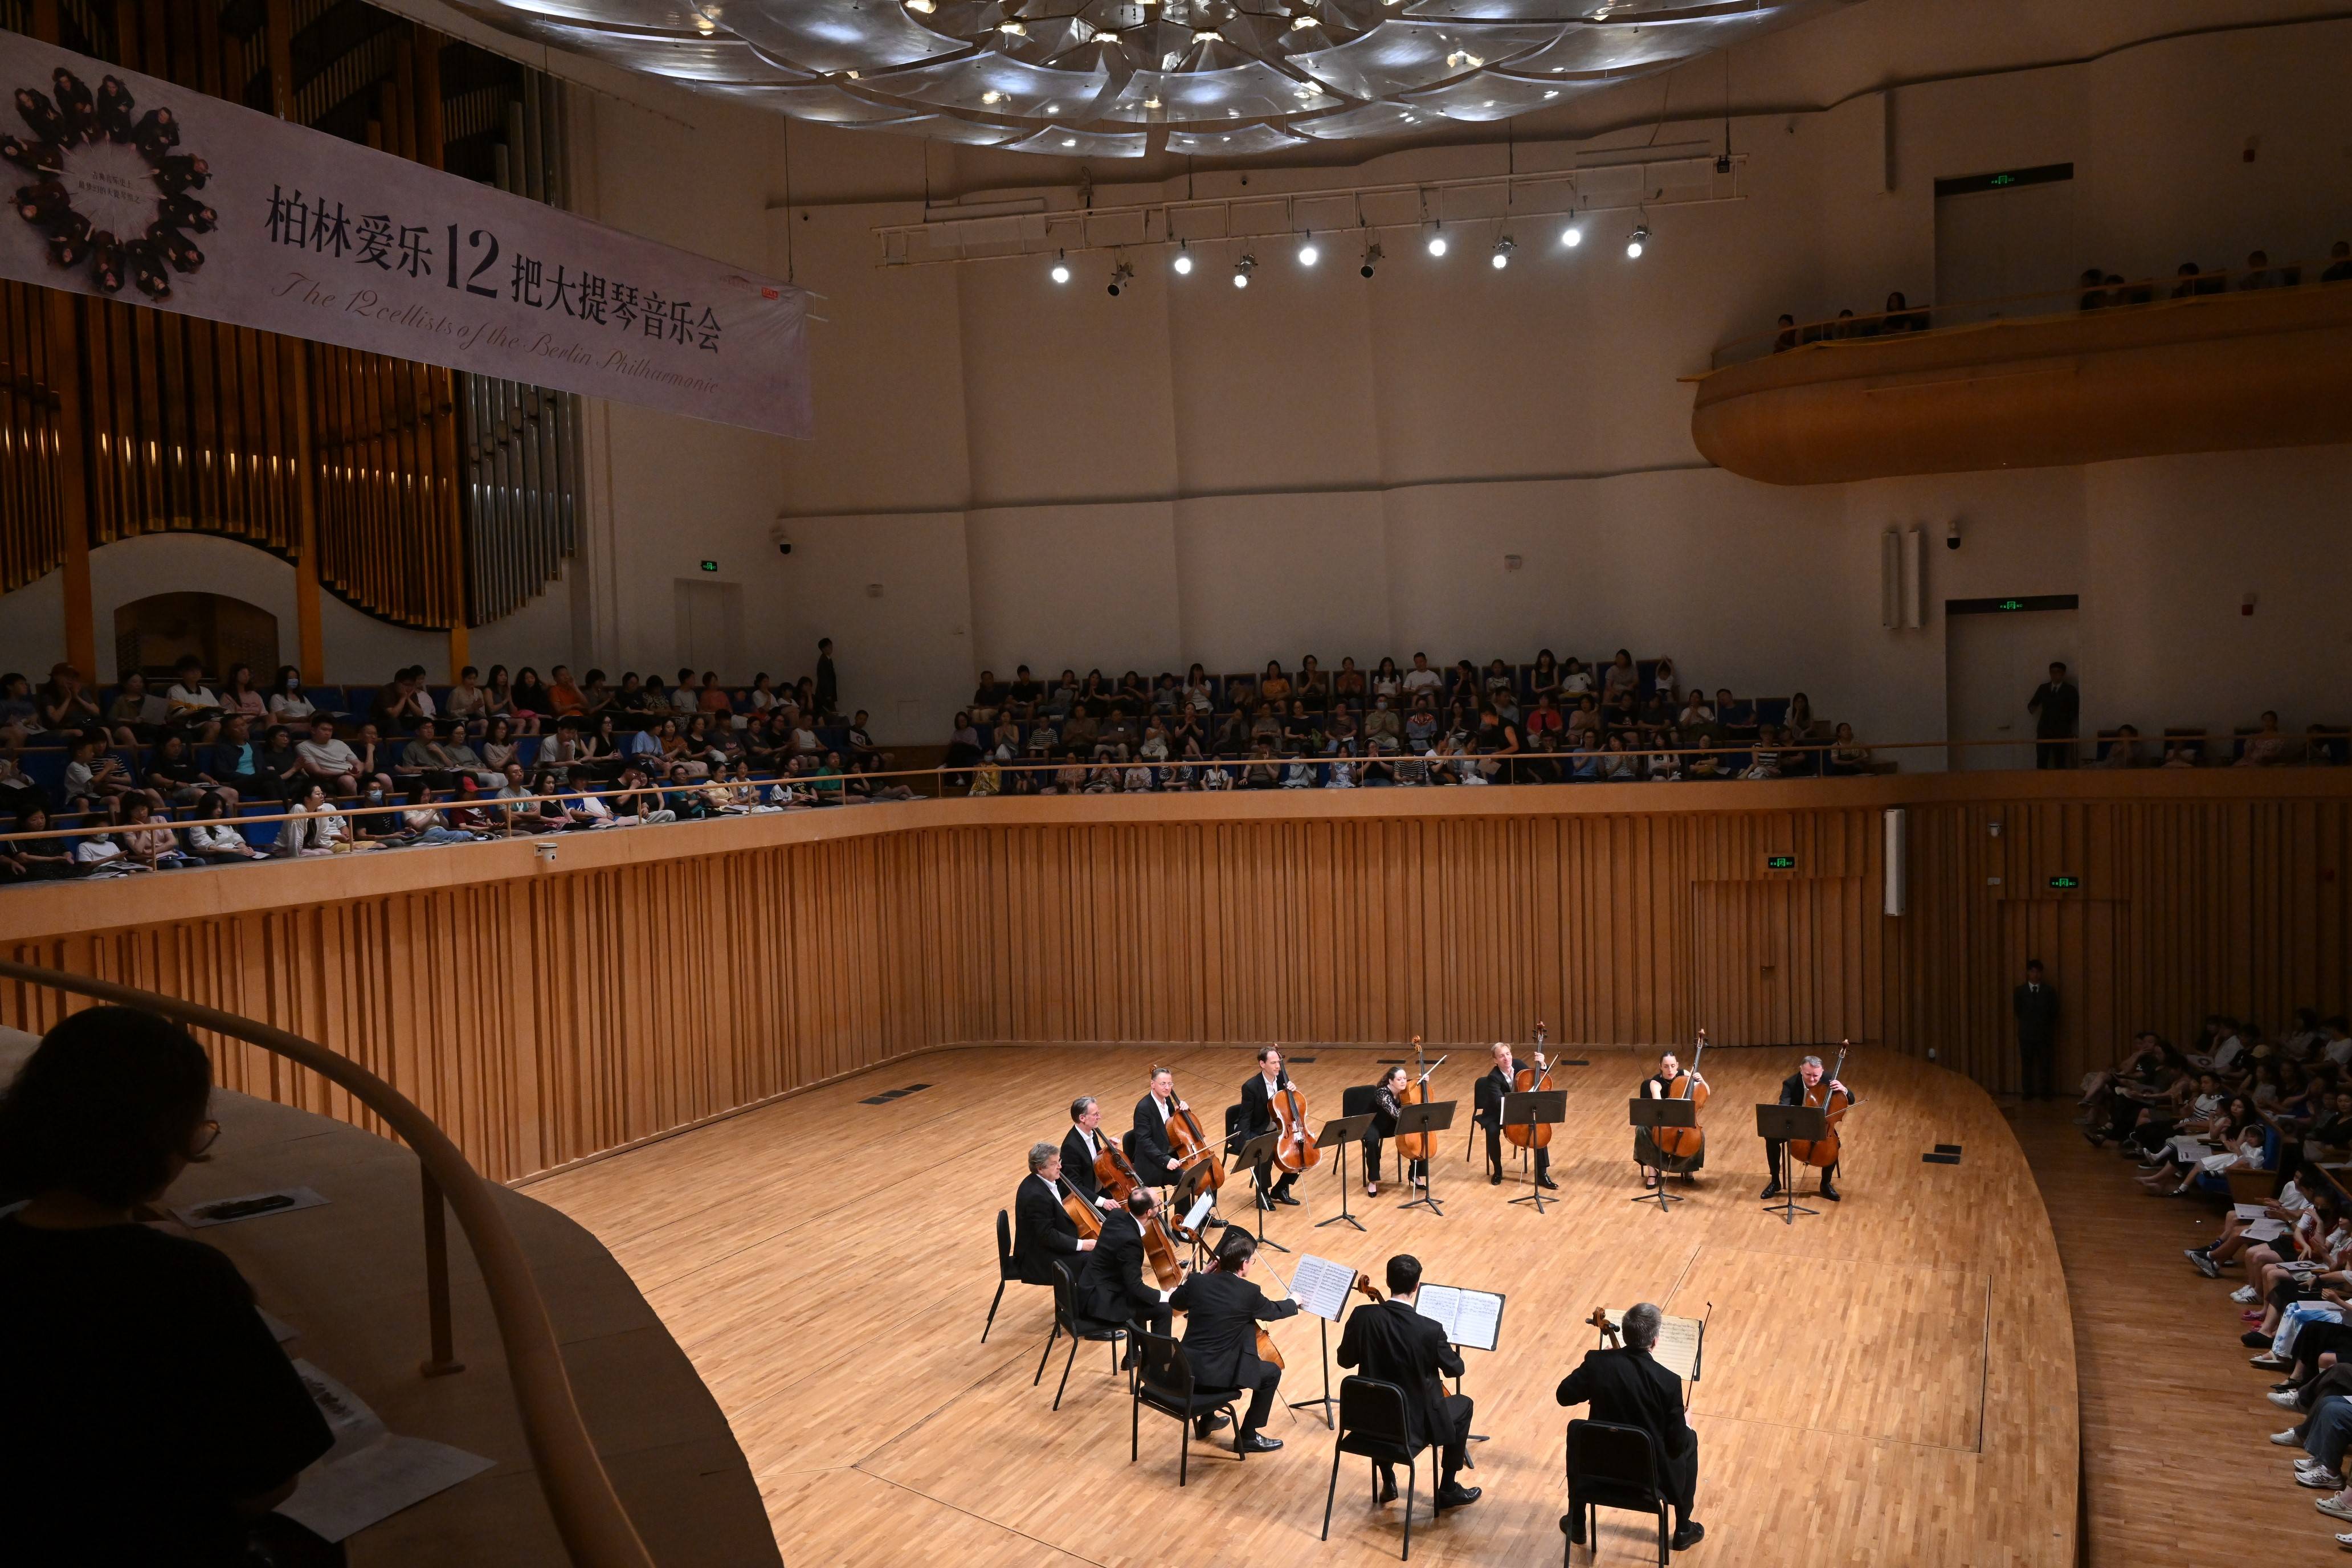 柏林爱乐十二把大提琴音乐会在成都城市音乐厅圆满落幕